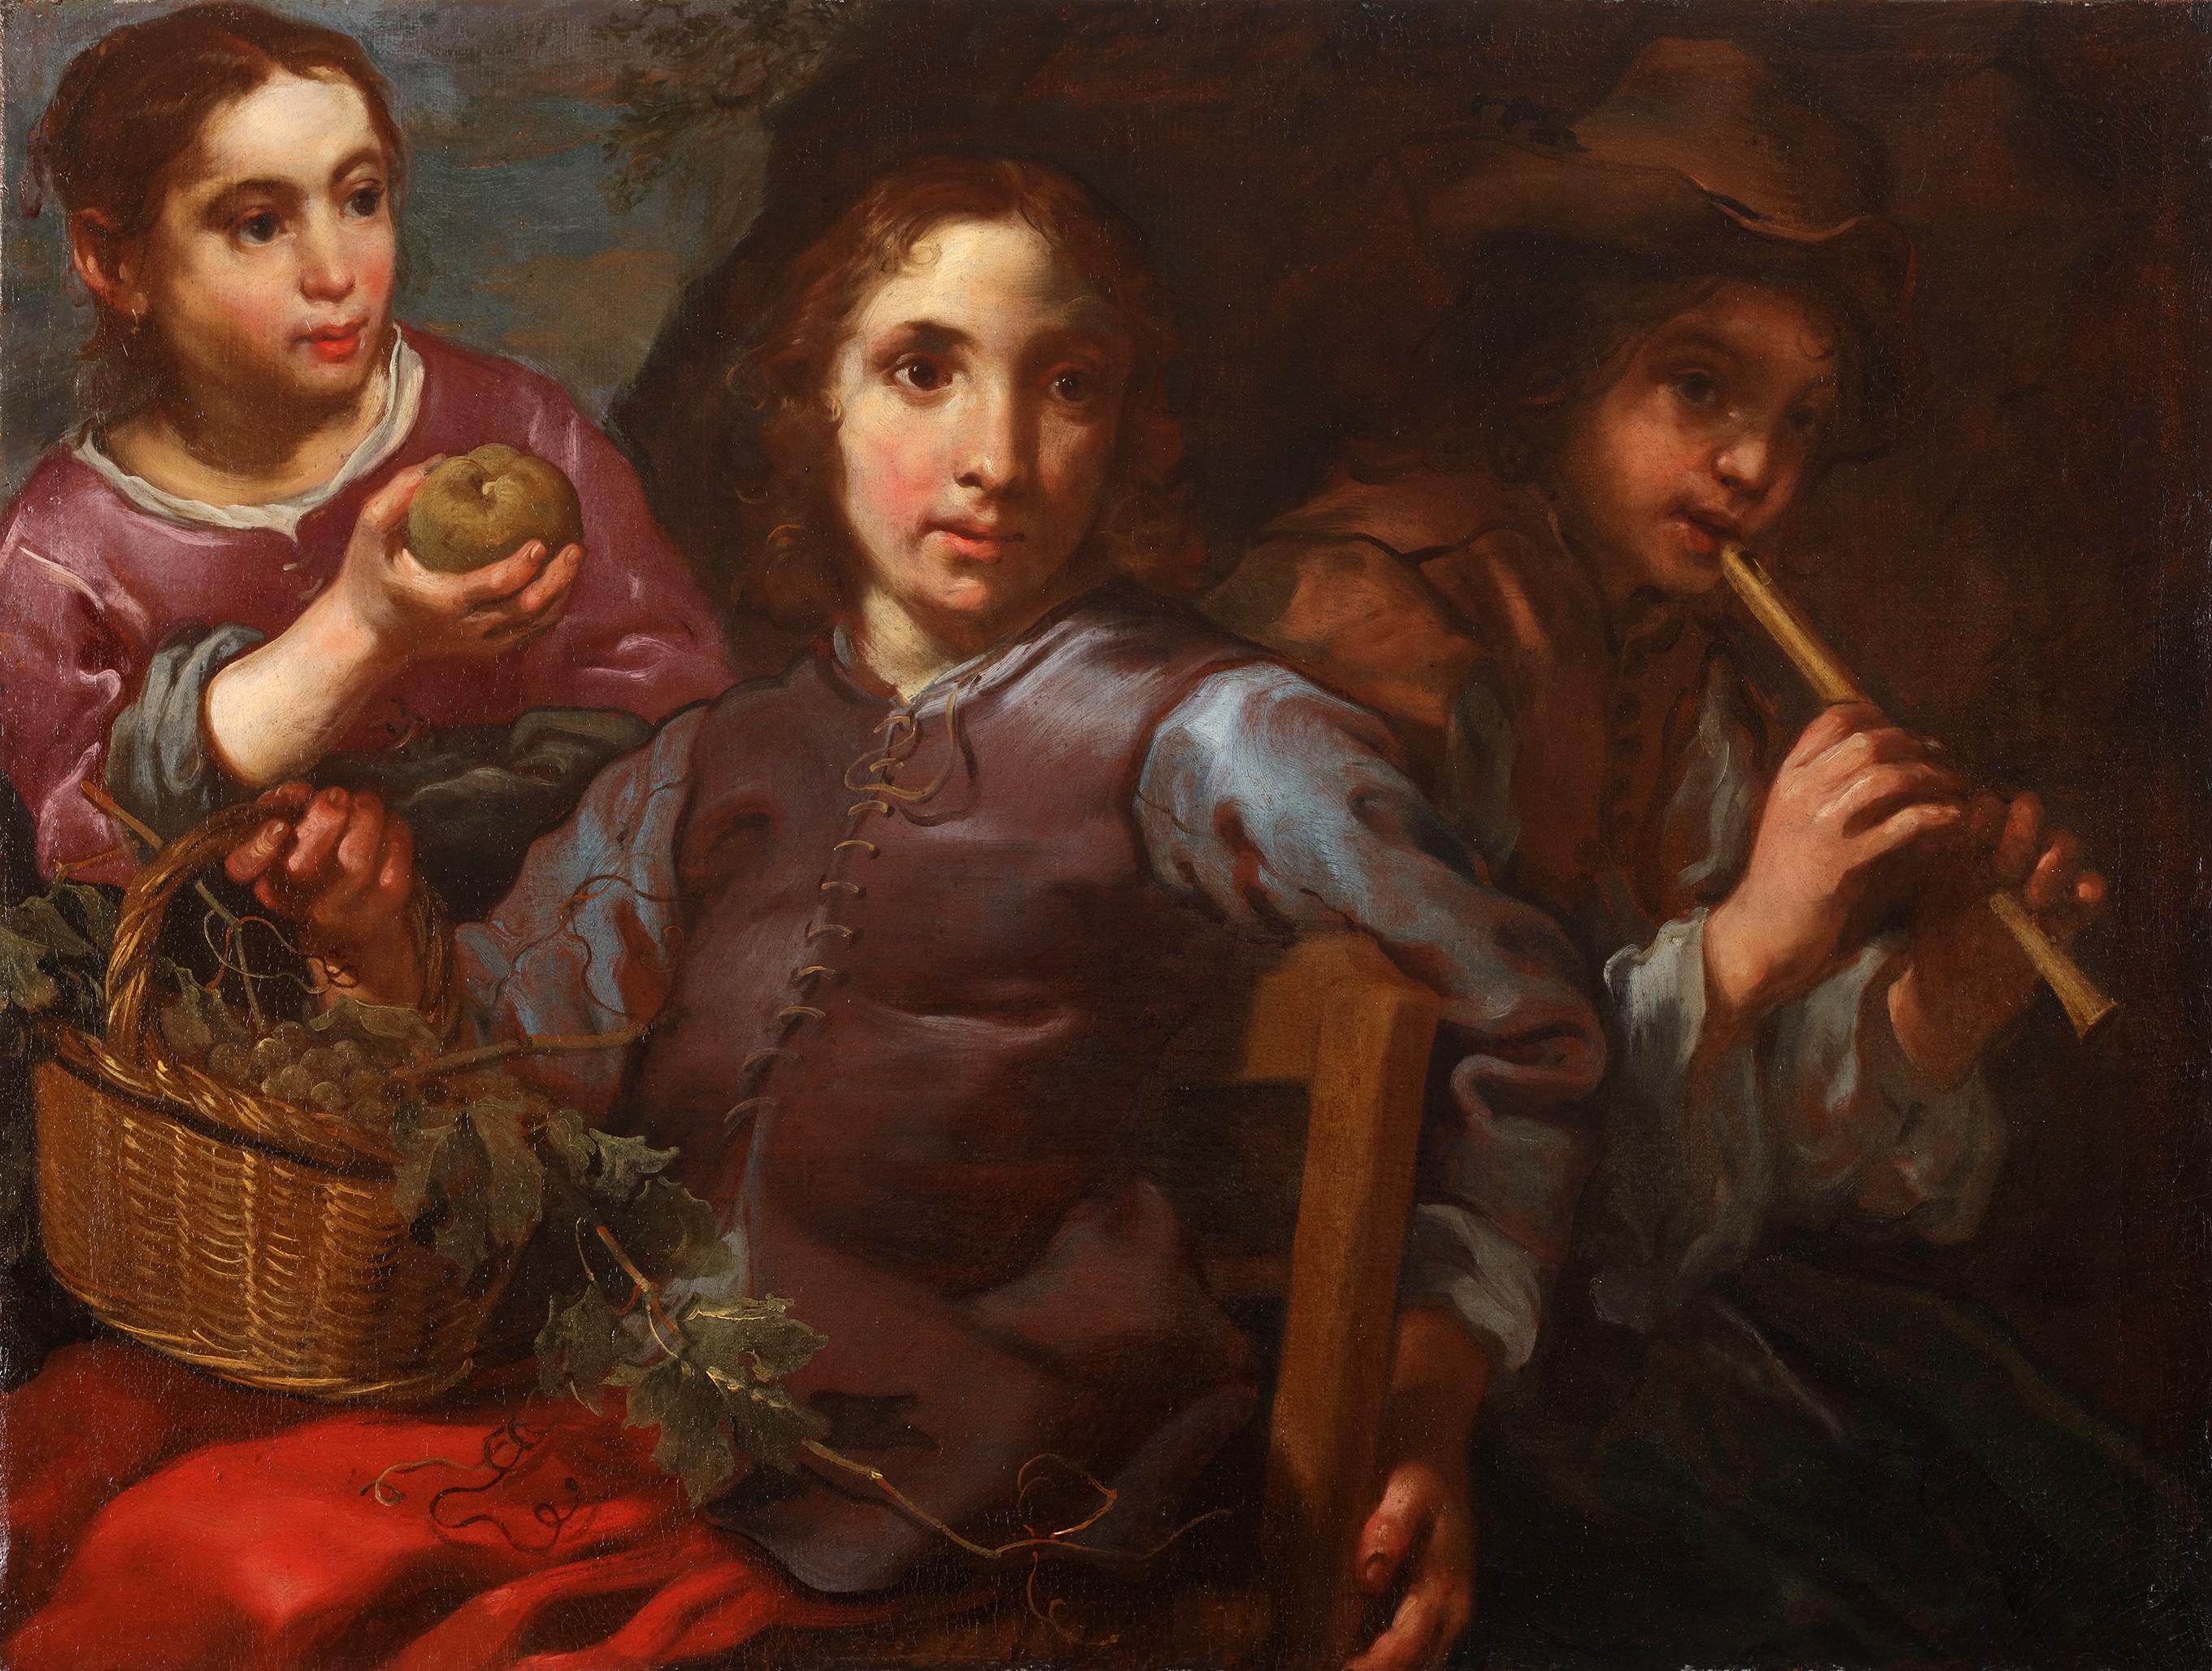 "Ein Porträt von drei Kindern, von denen eines einen Korb mit Weintrauben hält, während ein anderes Flöte spielt.

Öl auf Leinwand

Untergebracht in einem geschwärzten Rahmen aus dem 17. Jahrhundert.

Wir möchten uns bei Dr. Fred Meijer und Dr.